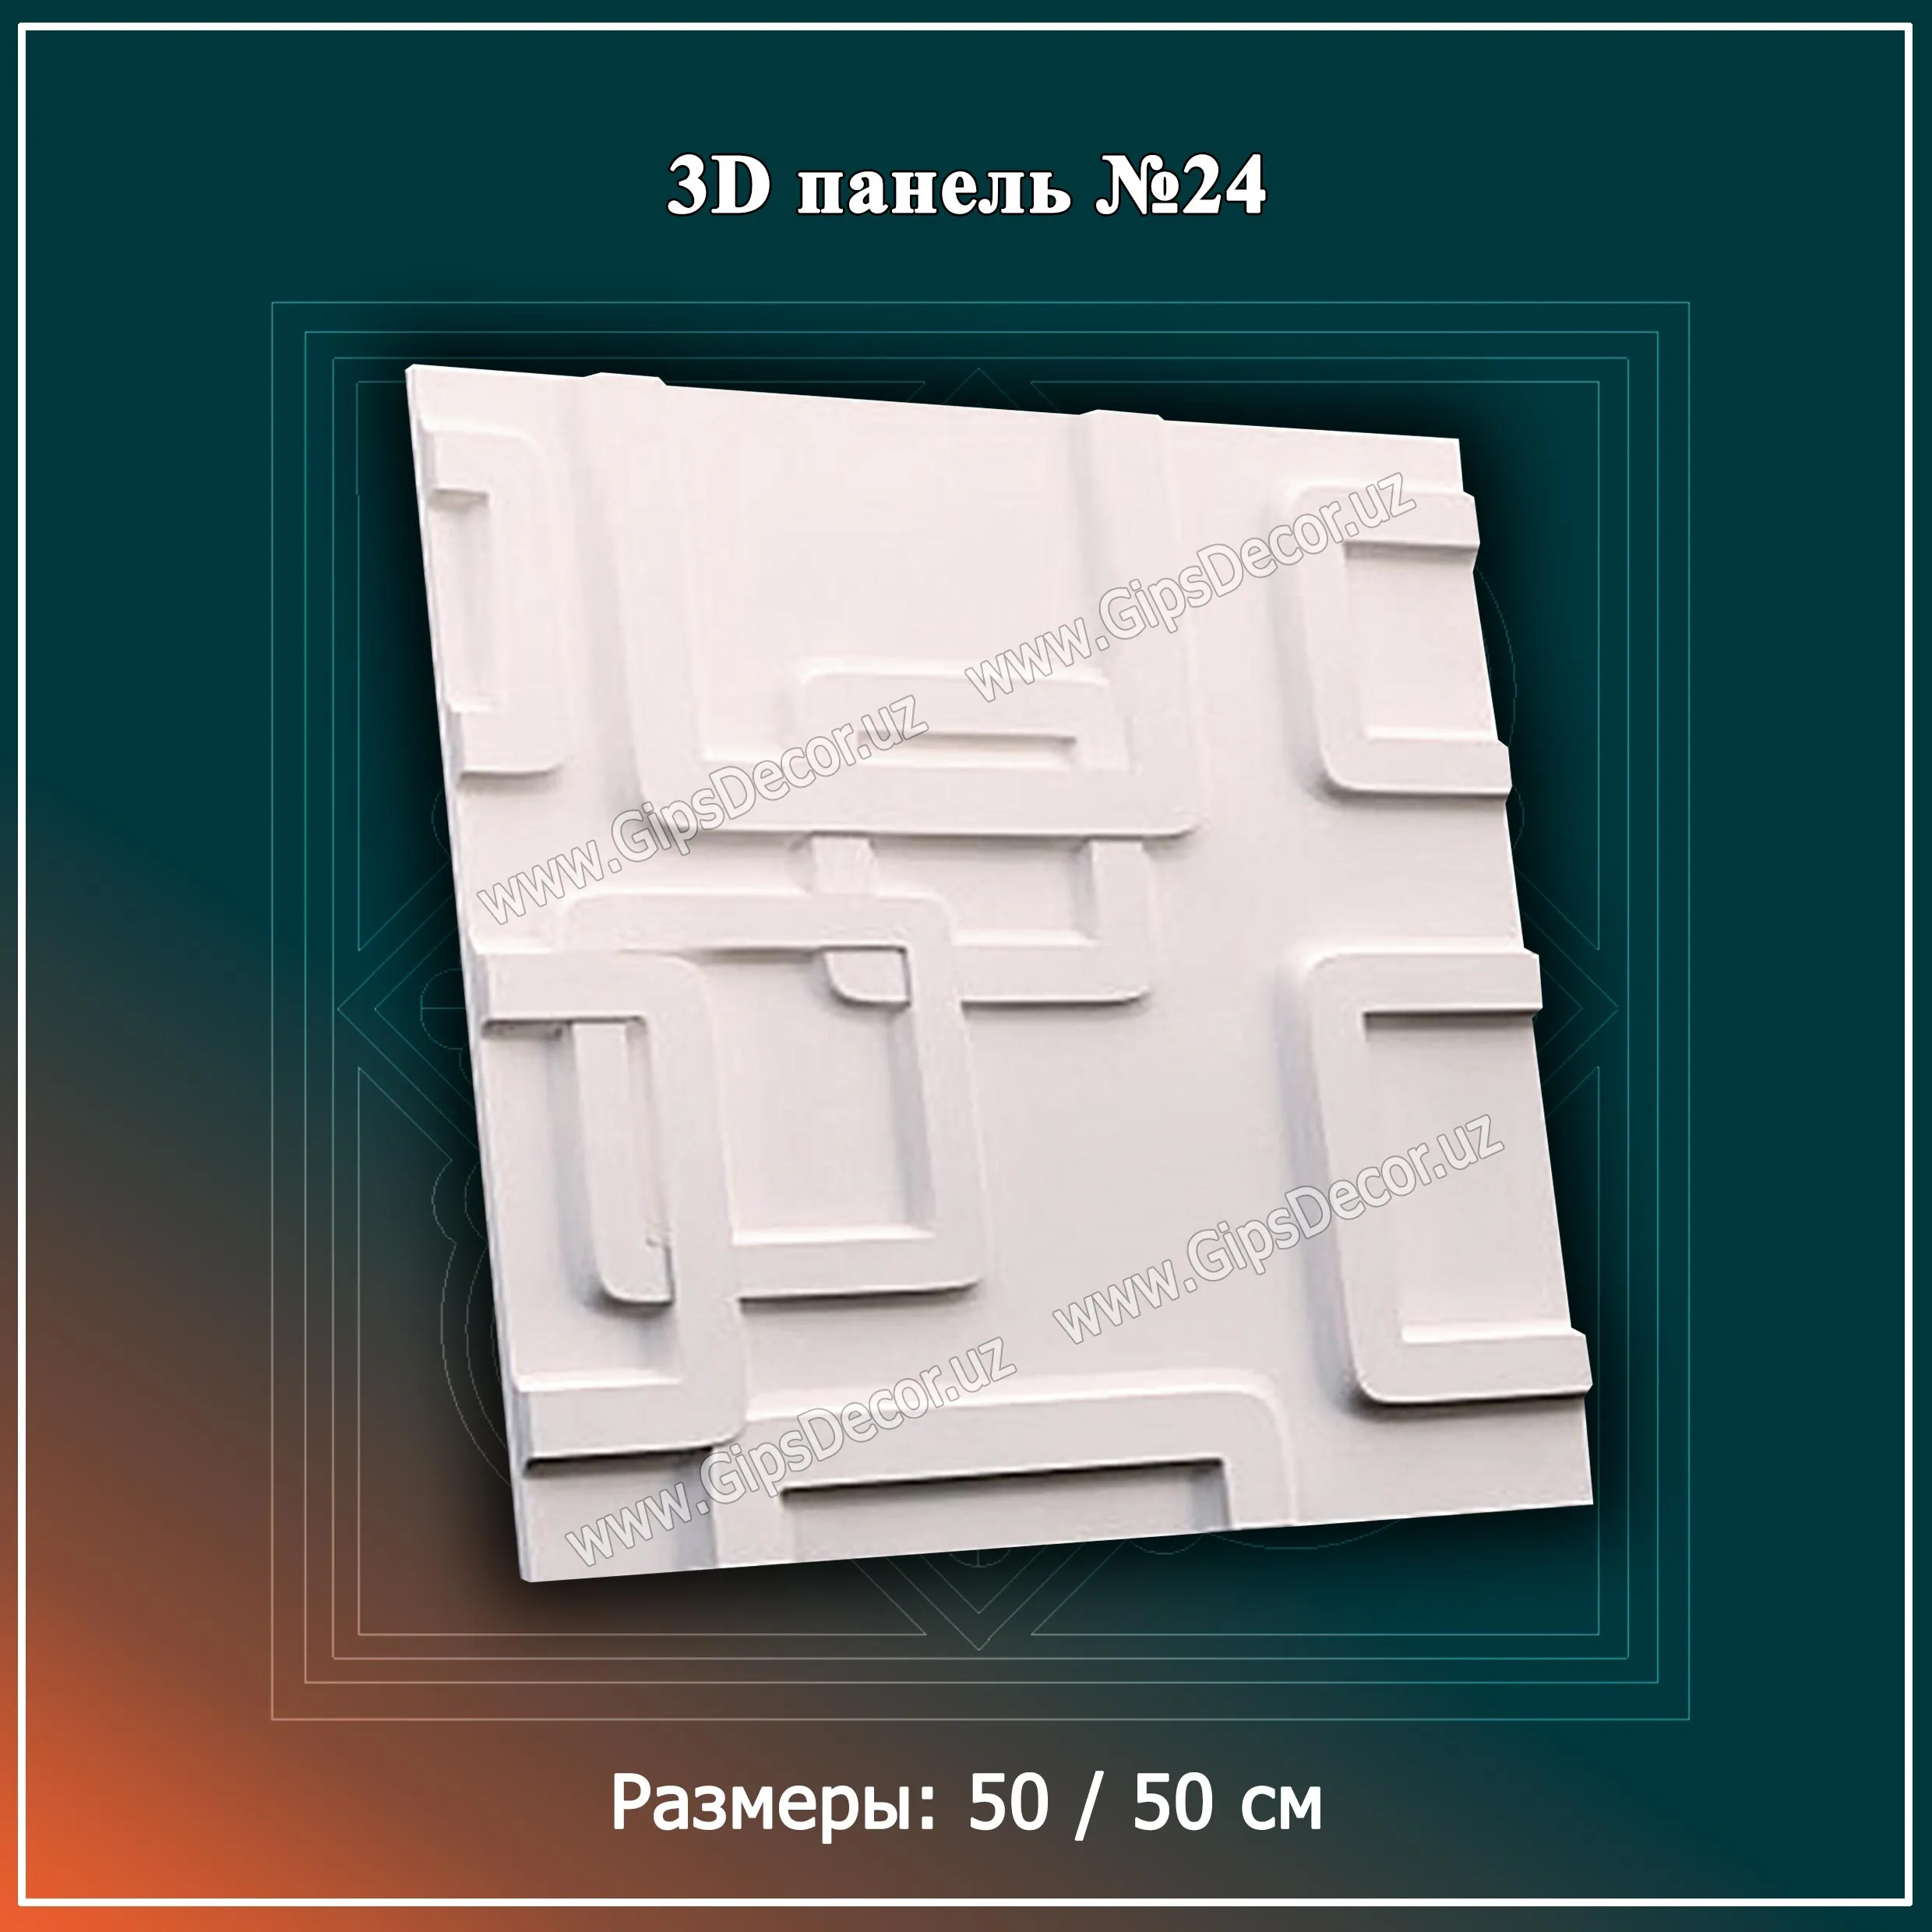 3D Панель №24 Размеры: 50 / 50 см#1